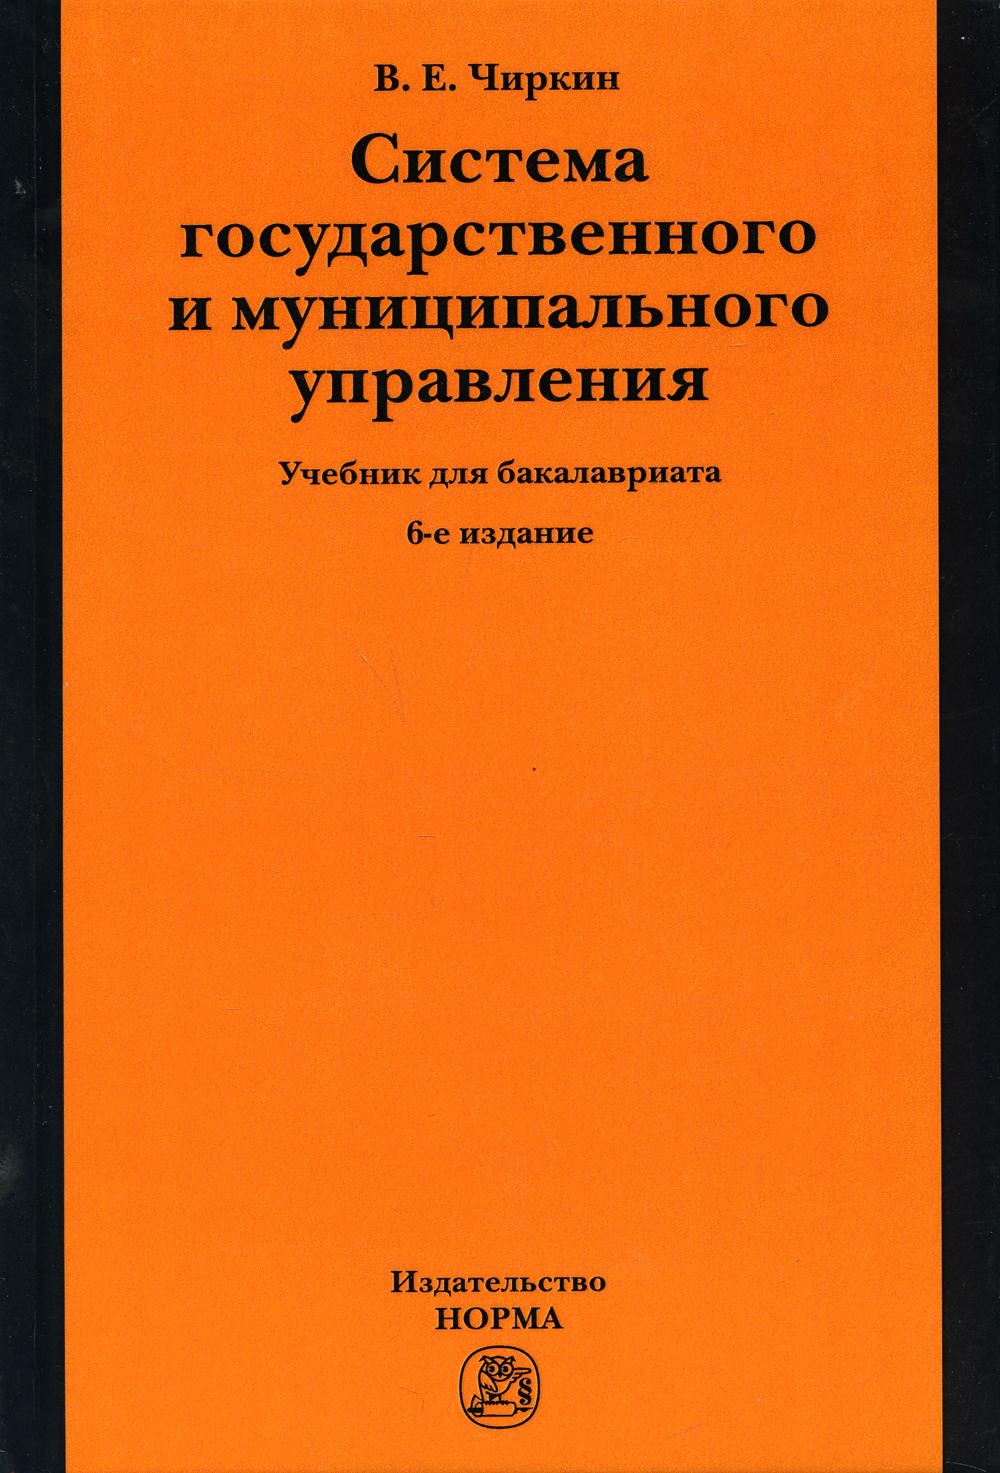 Система государственного и муниципального управления: Учебник для бакалавриата. 6-е изд., перераб